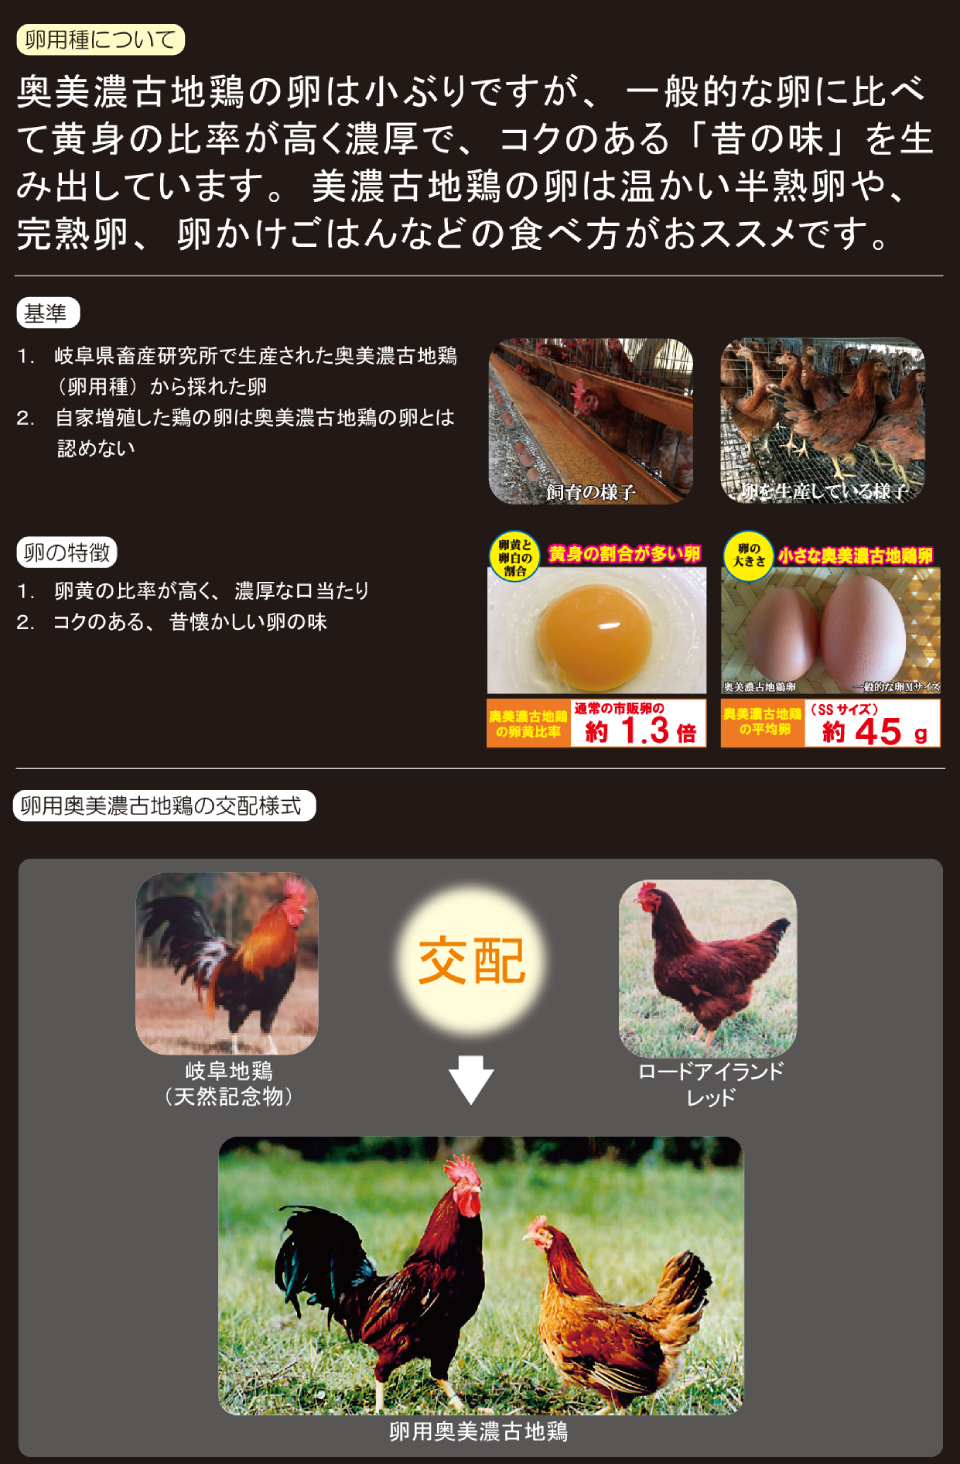 送料無料 岐阜県 奥美濃古血地鶏 混ぜご飯の素 とり沢 1袋 2-3人分 おにぎり まぜごはん 炊き込み風 高級品市場